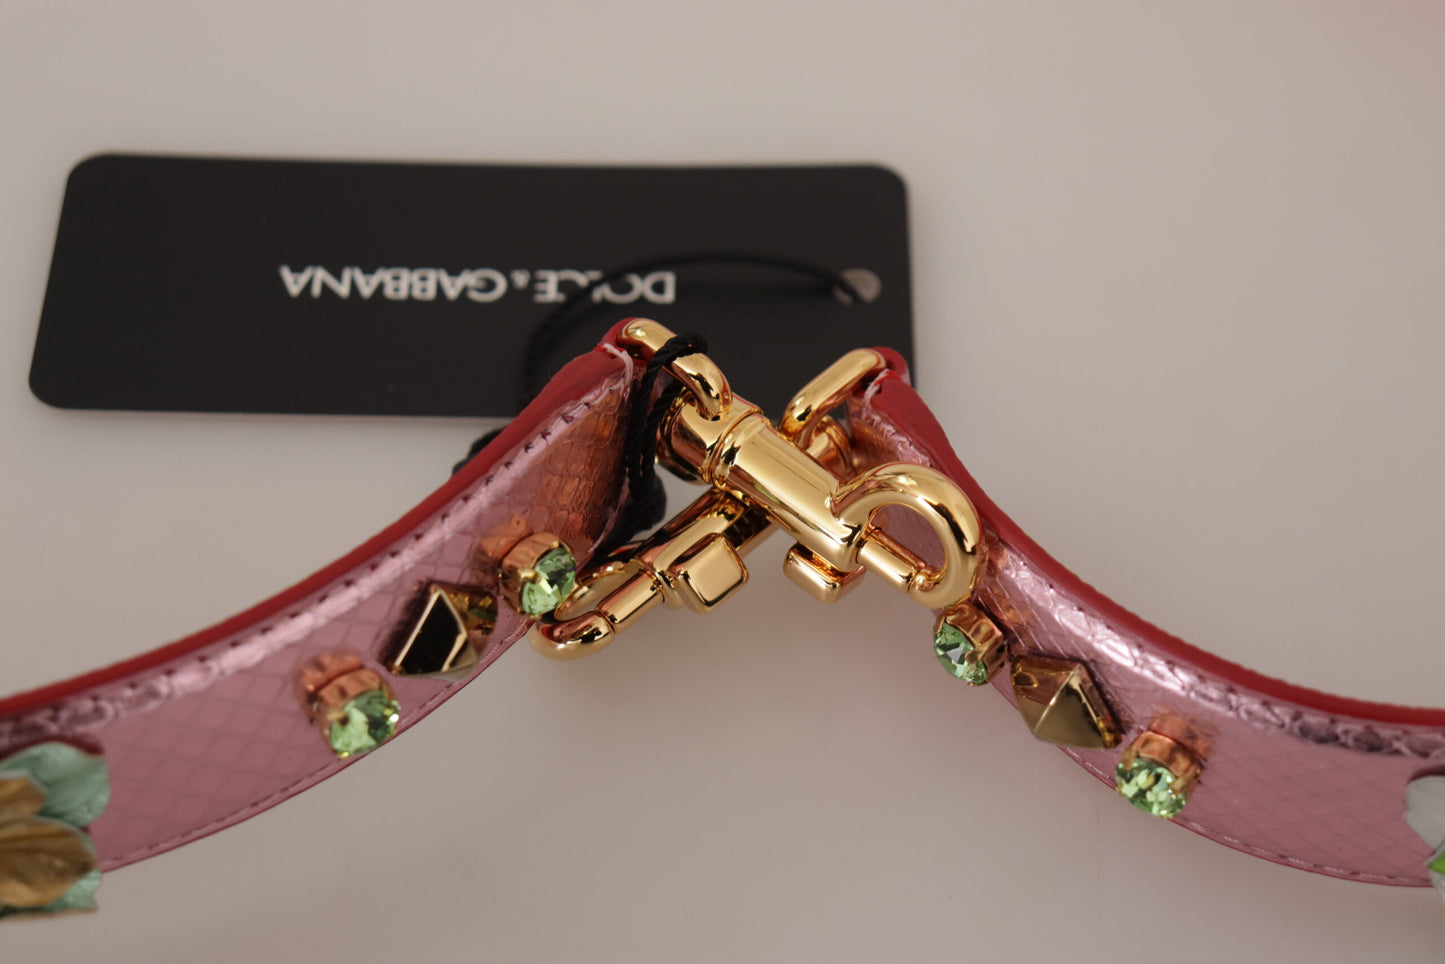 Dolce & Gabbana Metallic Rosa in pelle Pinza spalla con borchie